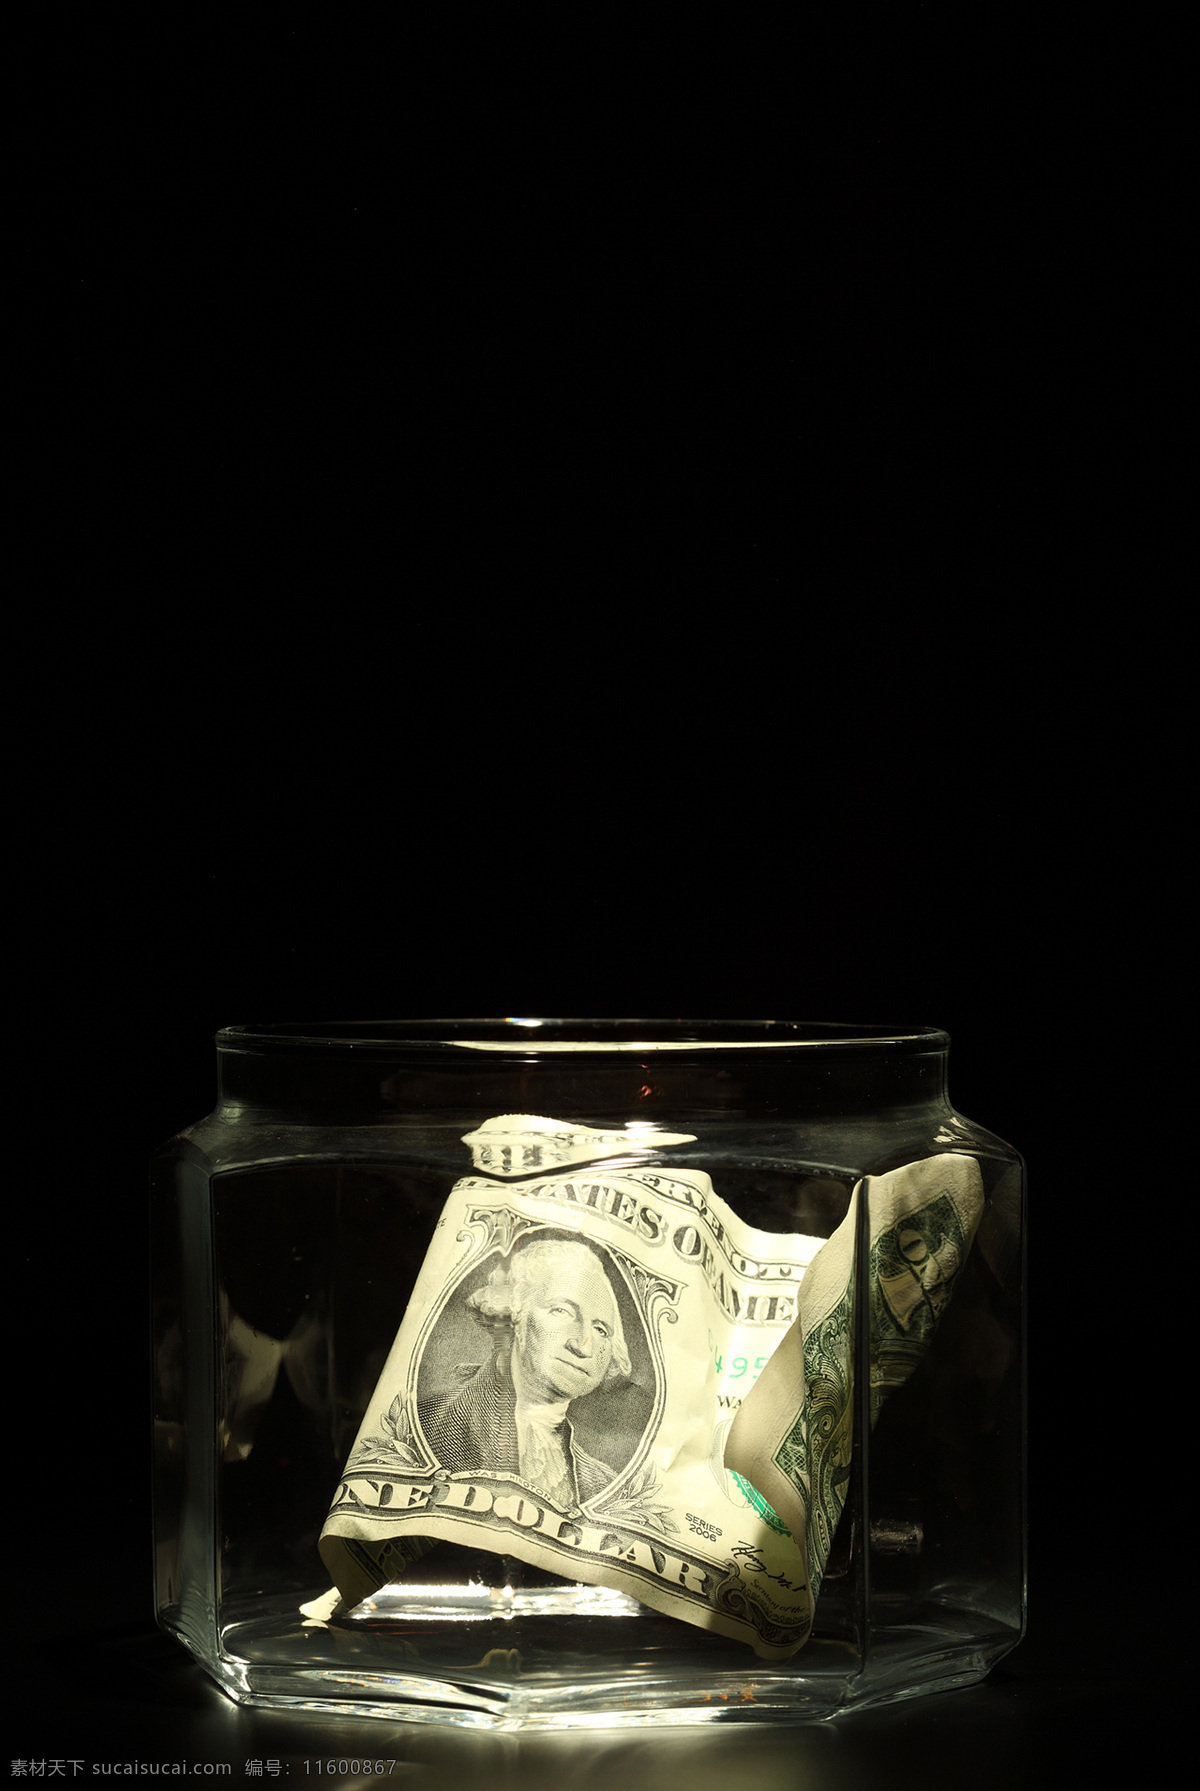 透明 玻璃瓶 里 美元 储钱罐 美金 美钞 钞票 纸币 钱 金融货币 金融财经 商务金融